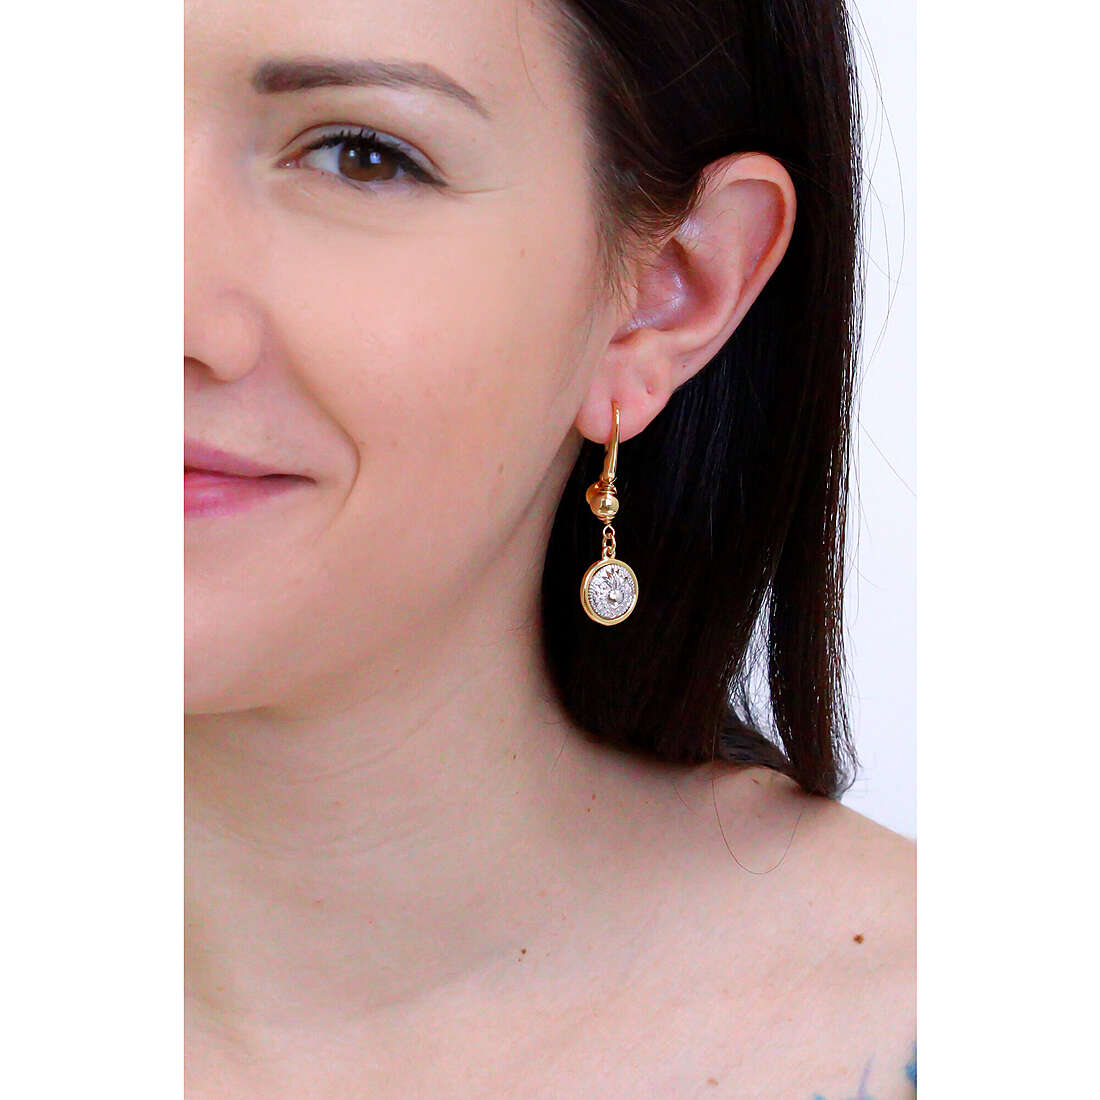 Ottaviani earrings Elegance woman 500447O wearing